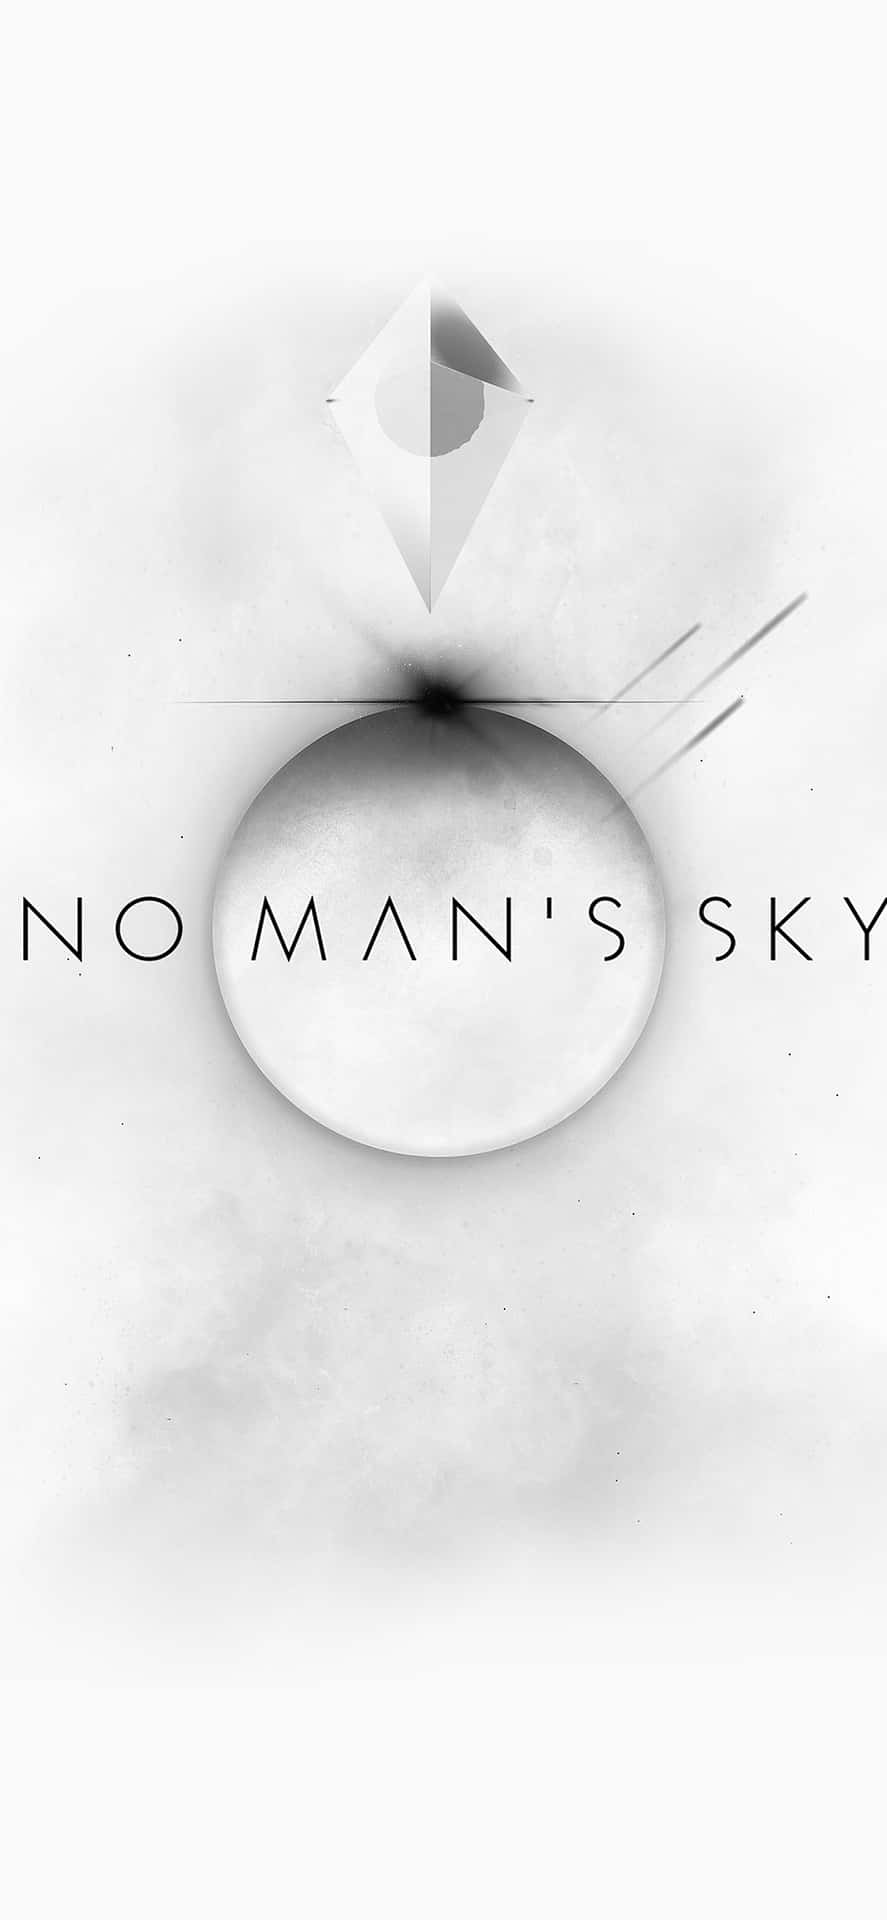 Ellogotipo De Noman's Sky Fondo de pantalla